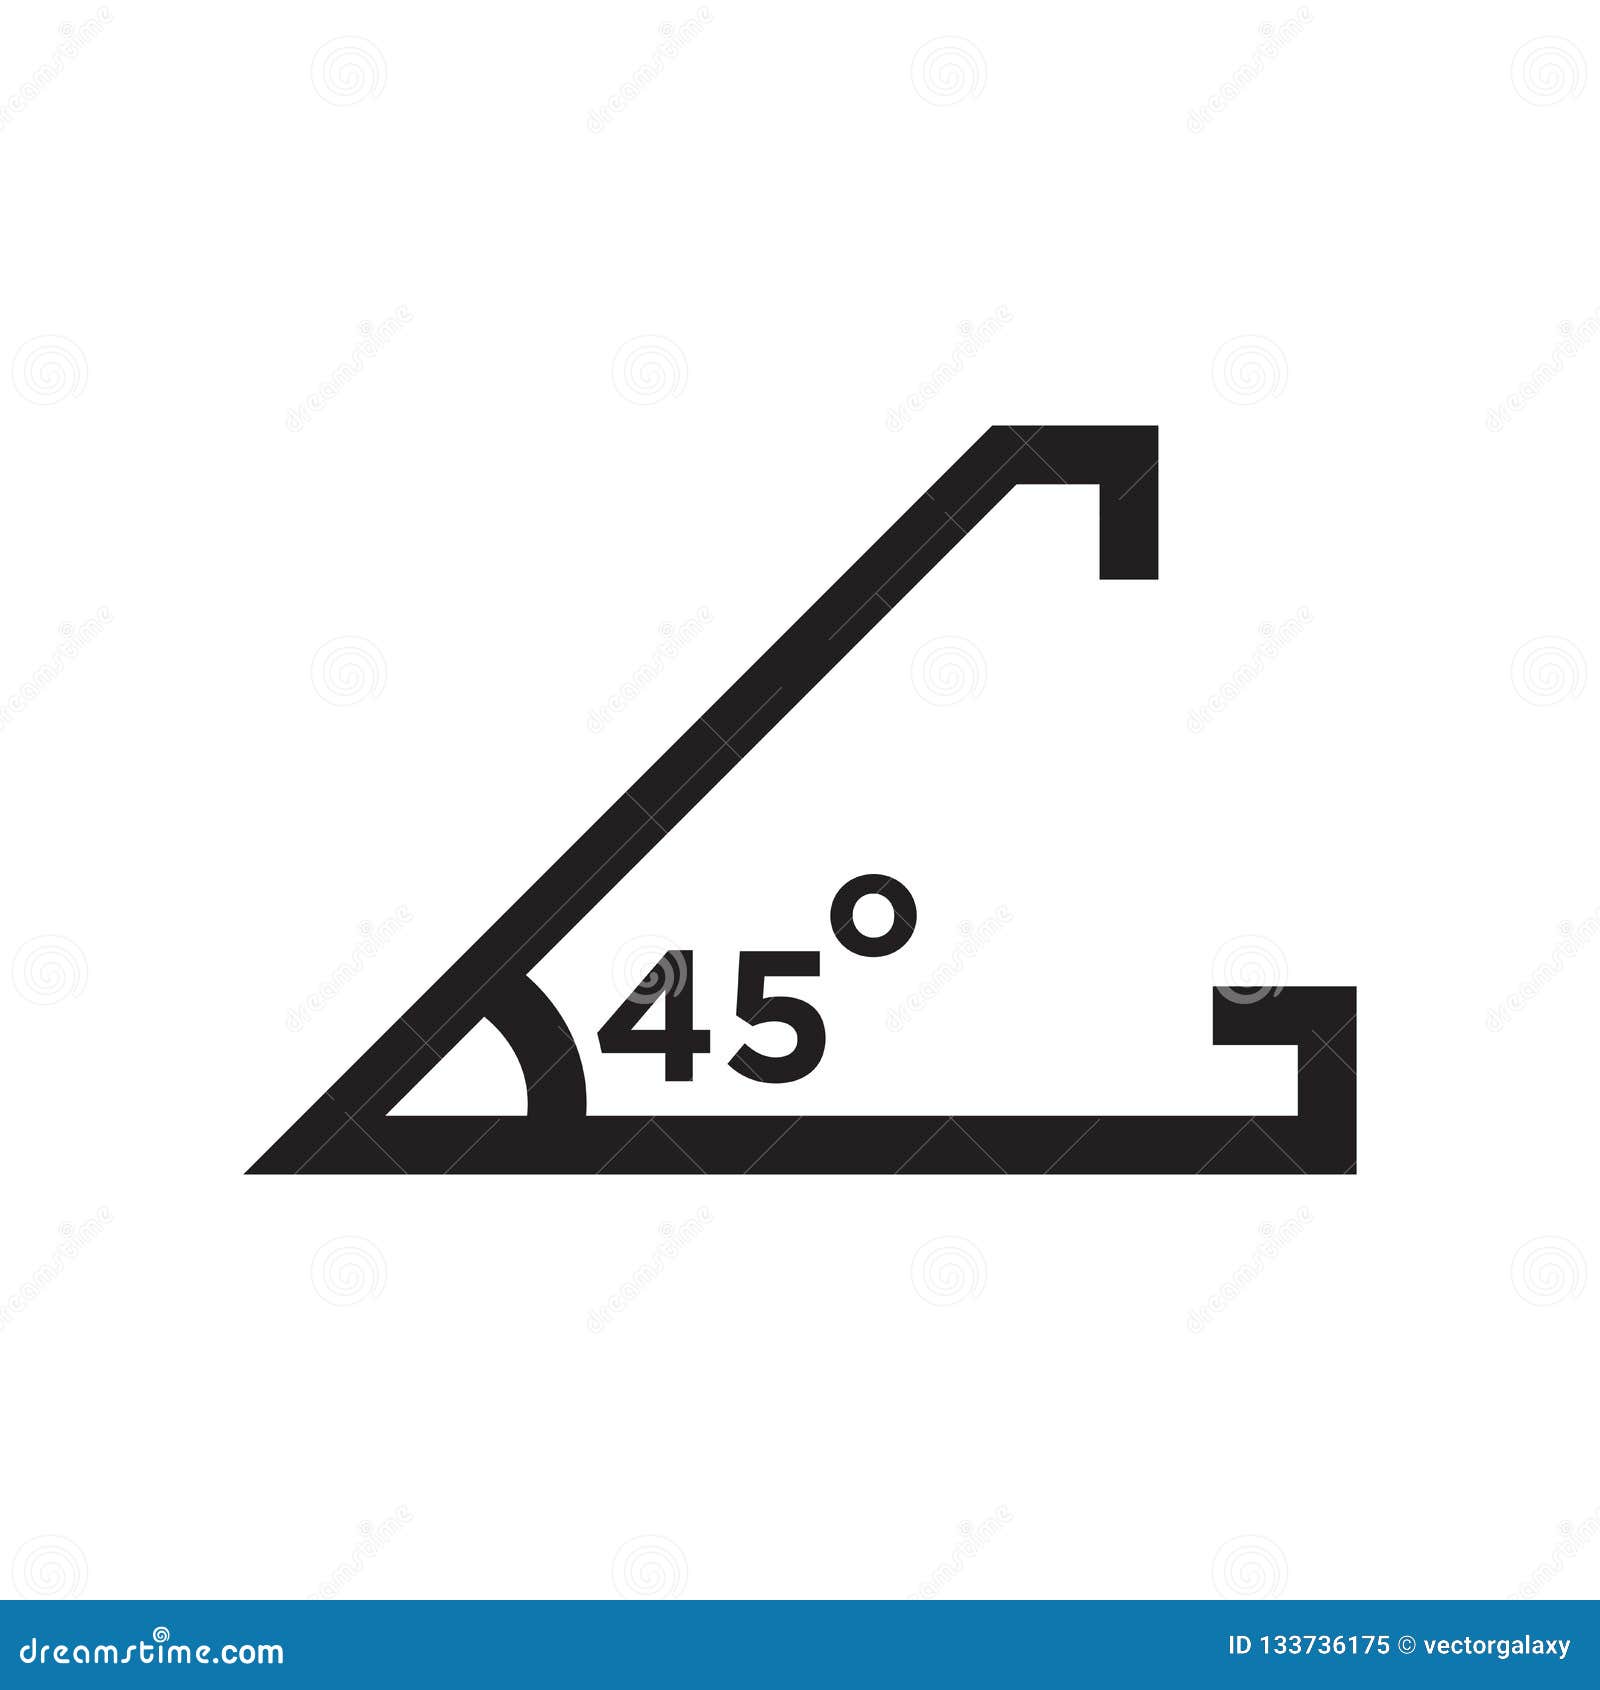 Um ângulo agudo de 45 graus ângulos desenho de uma linha